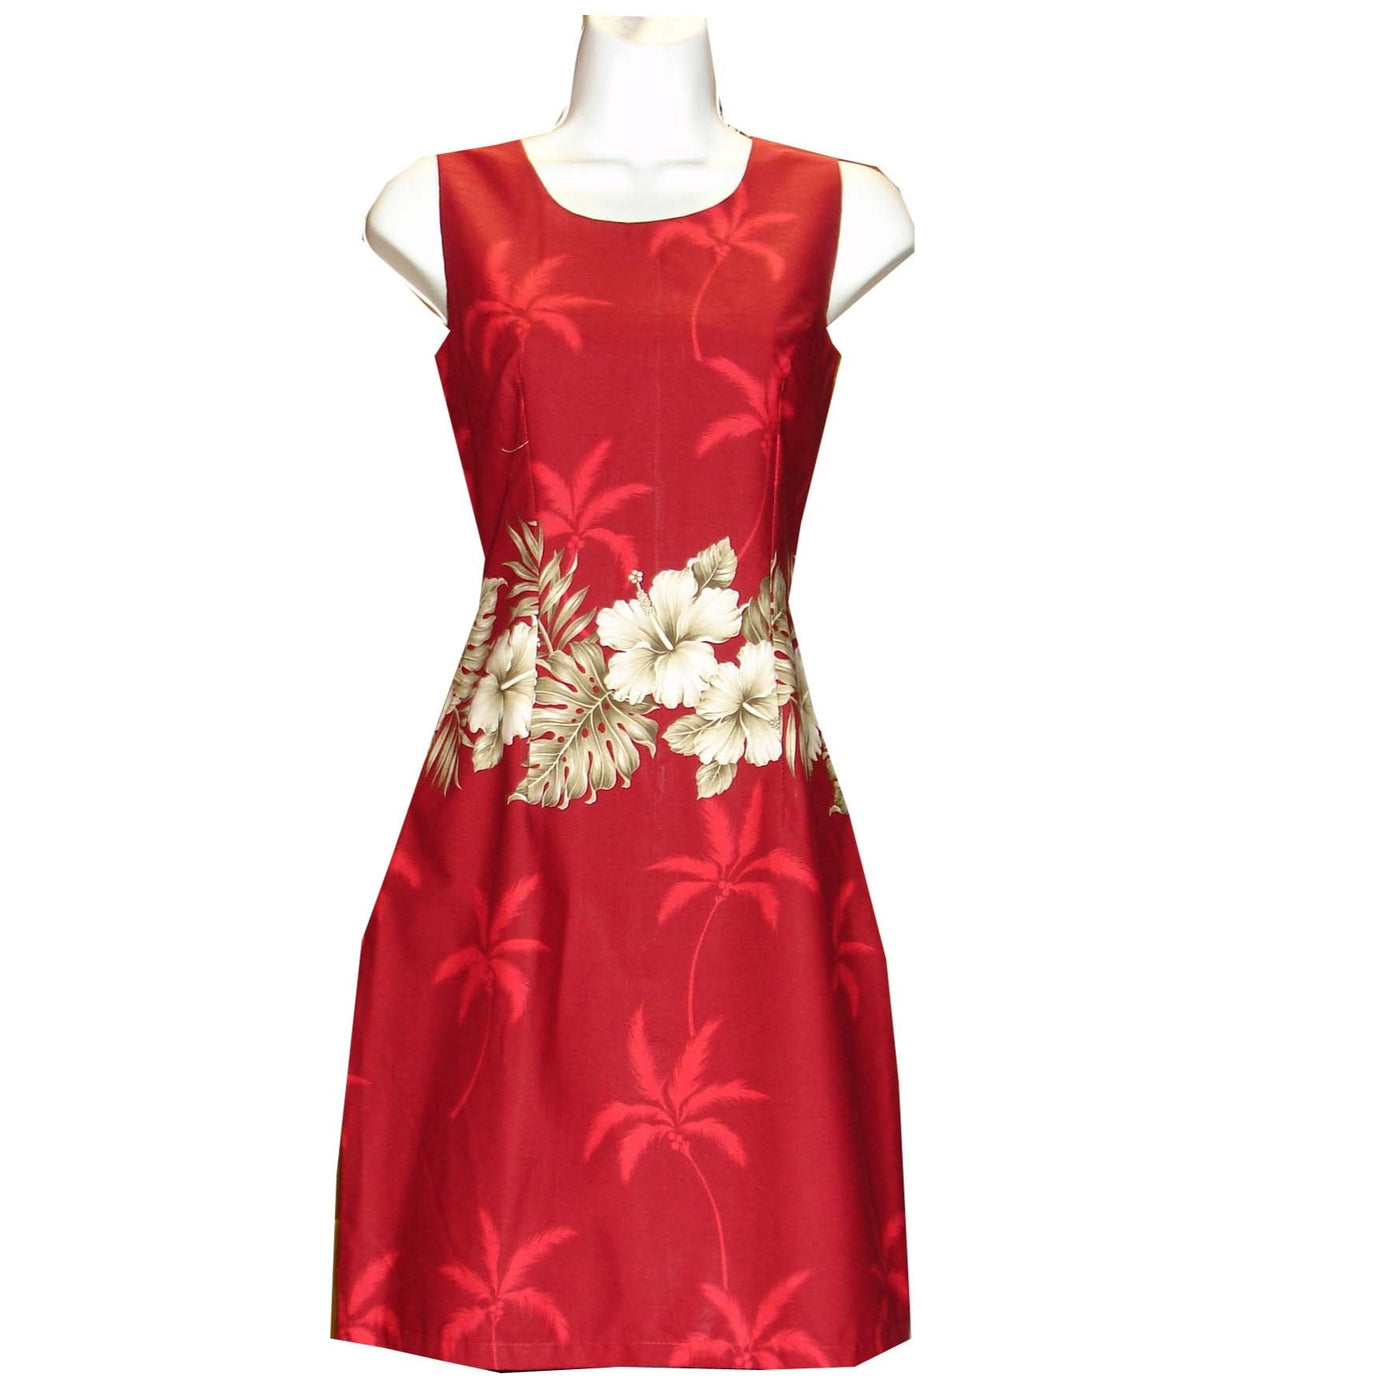 Vintage Hibiscus Short Hawaiian Tank Dress Made In Hawaii